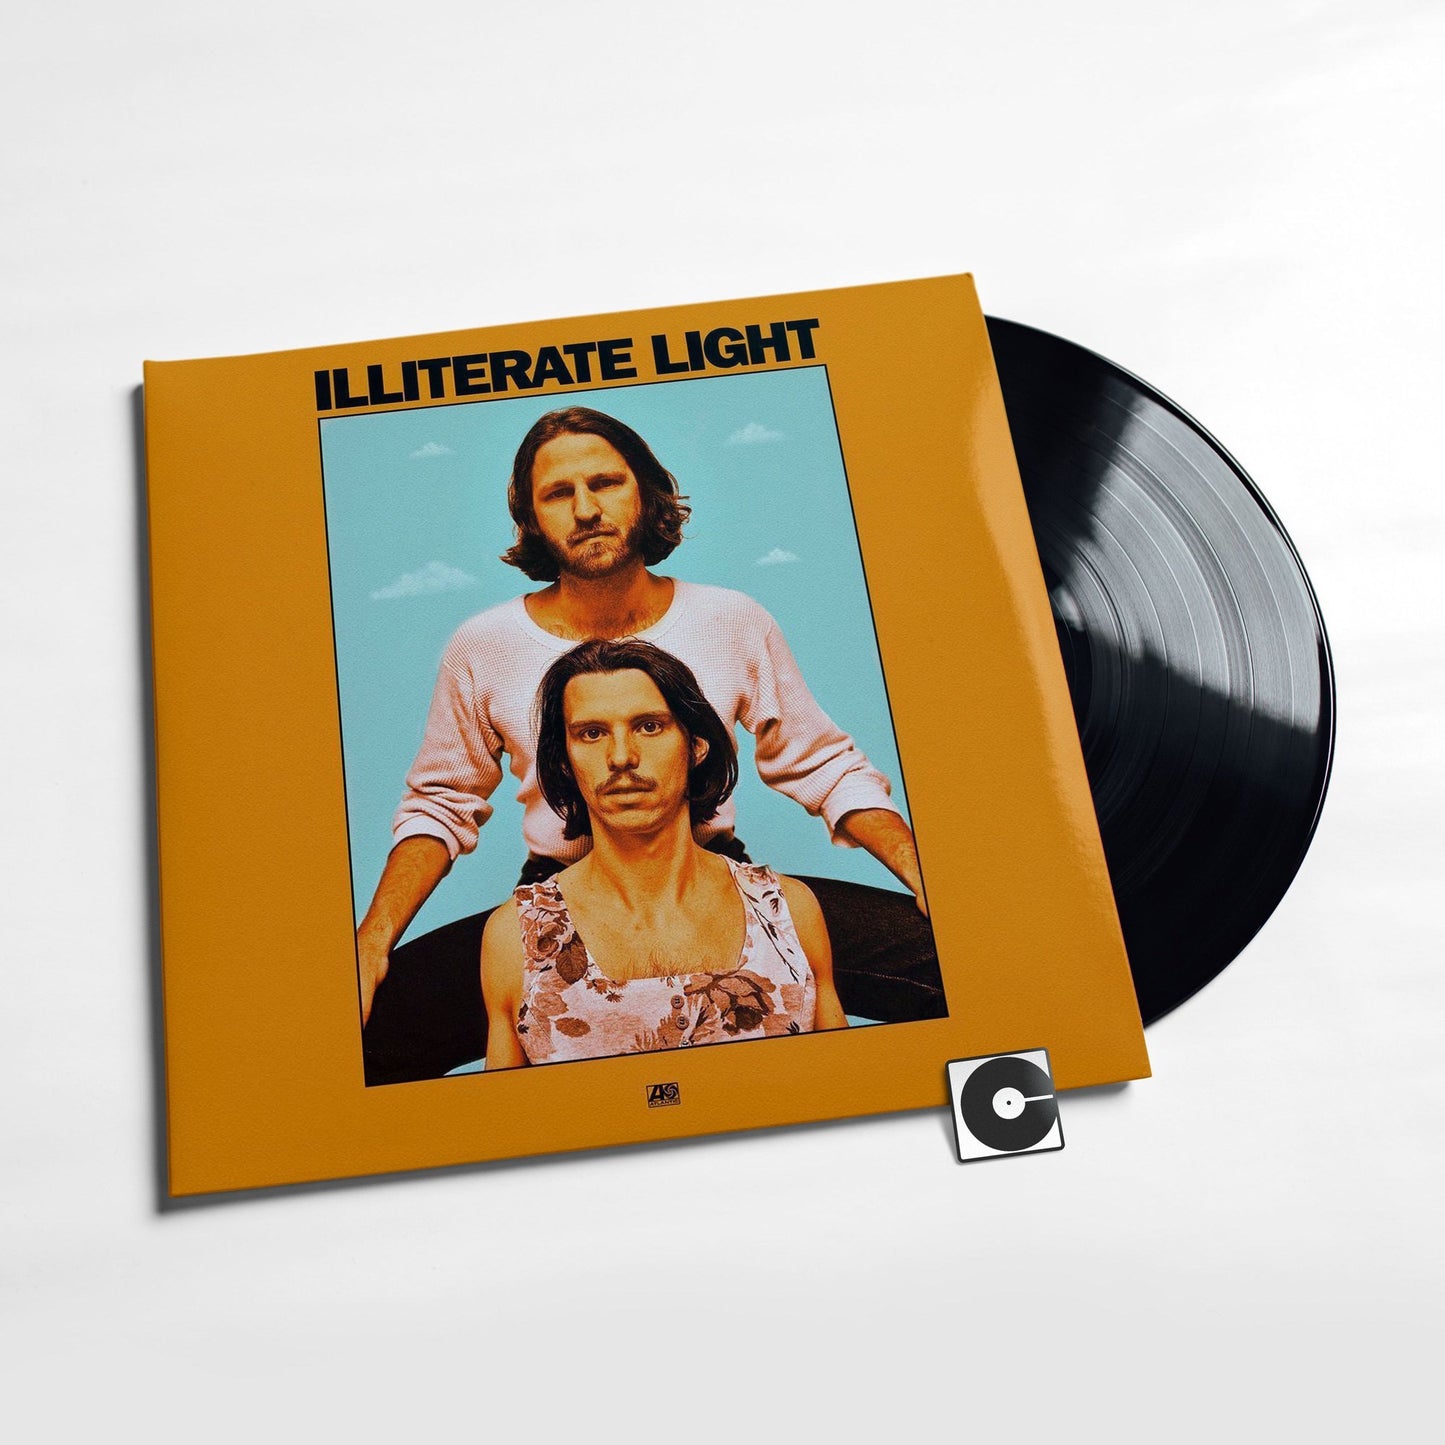 Illiterate Light - "Illiterate Light"